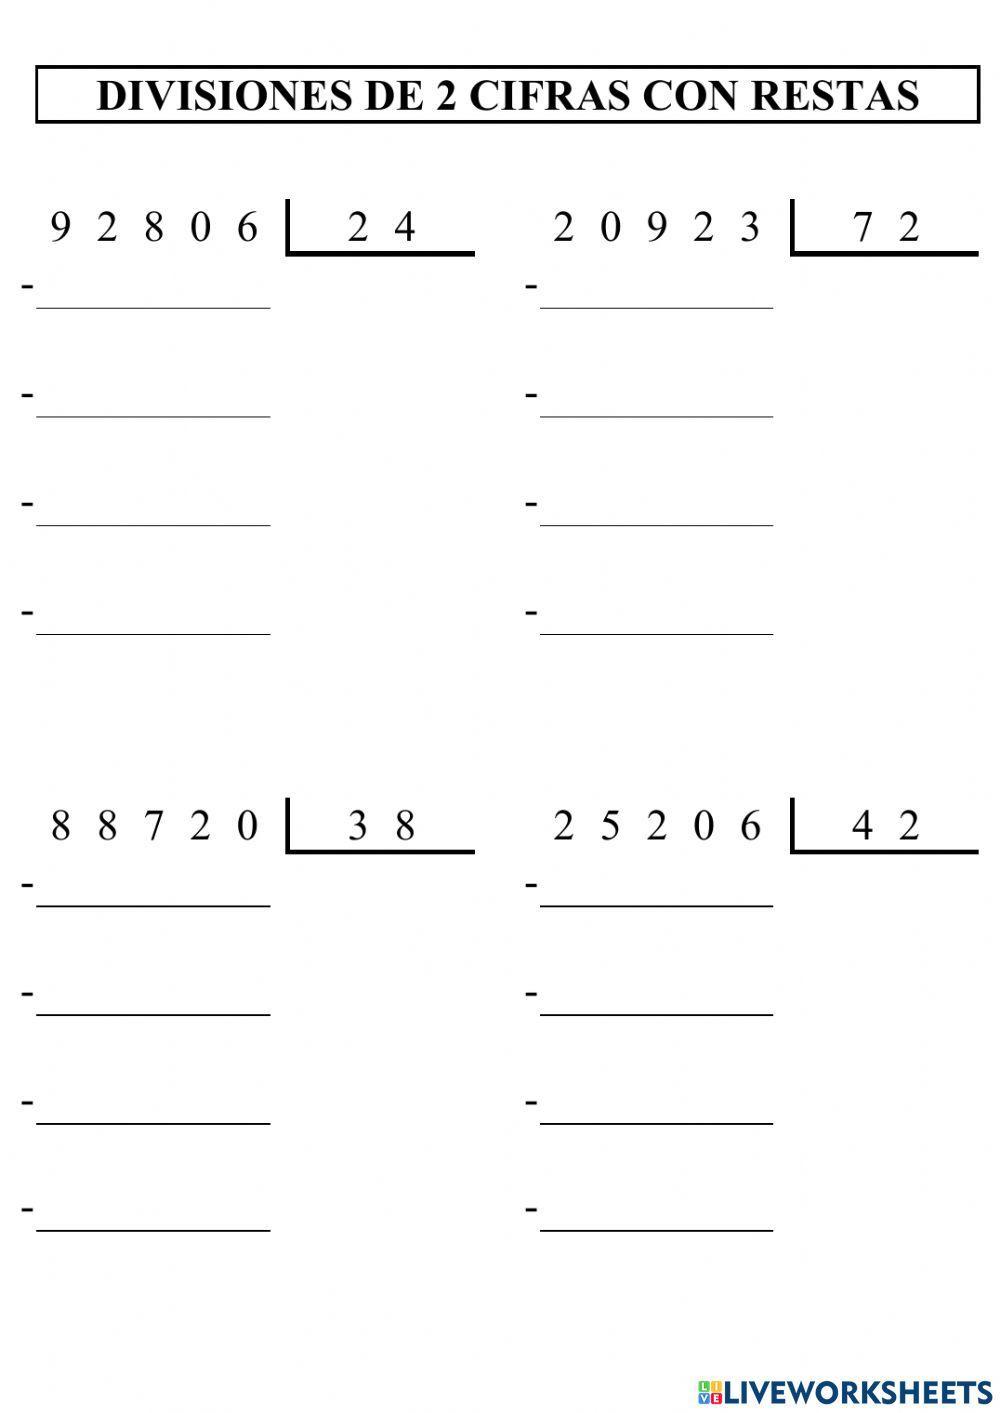 Divisiones de 2 cifras con restas - 1